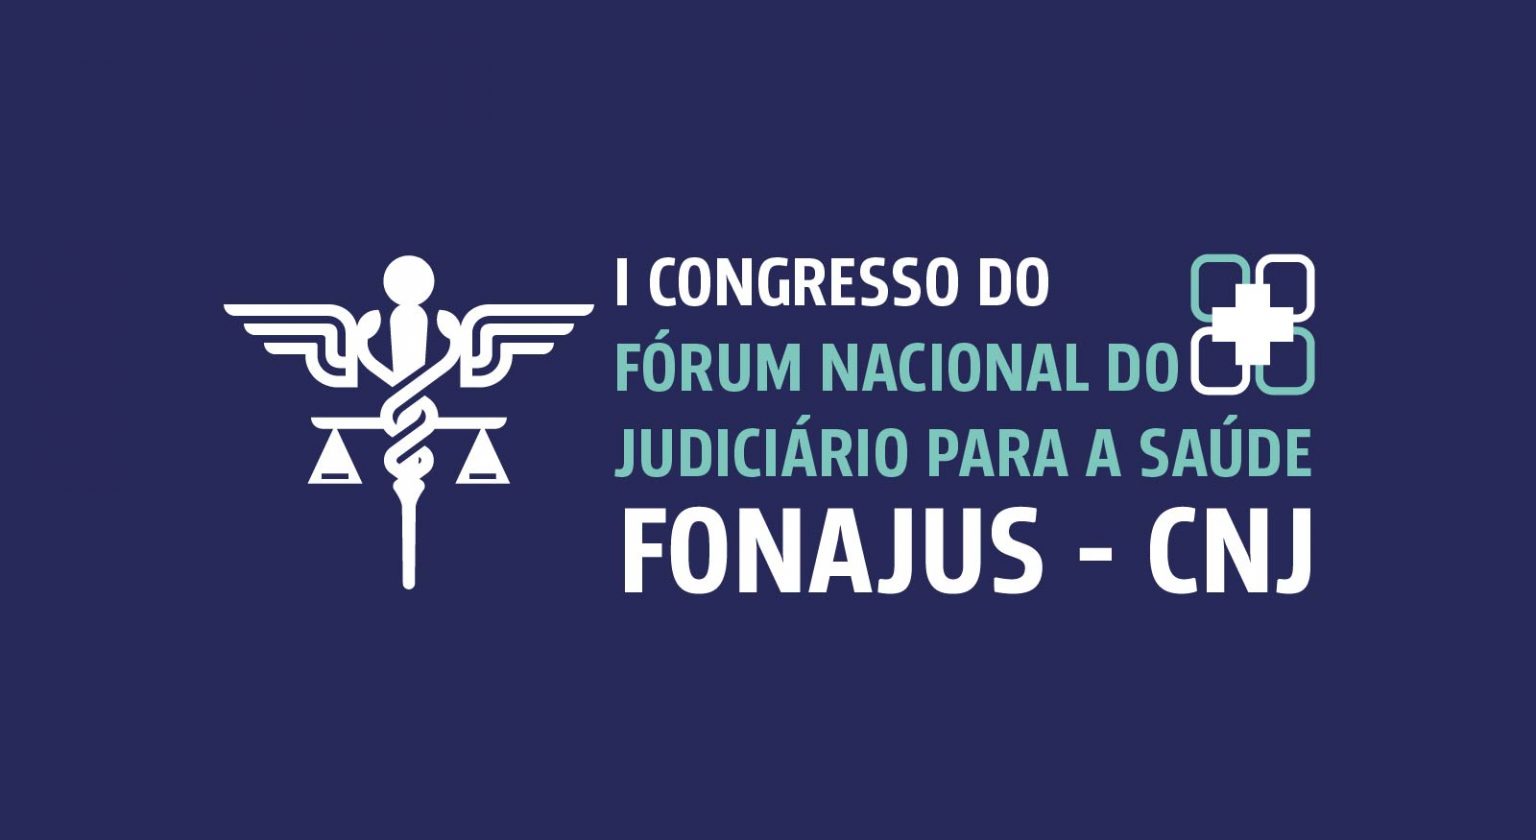 INSTITUCIONAL: Primeira edição do Fonajus abordará desafios da judicialização da saúde